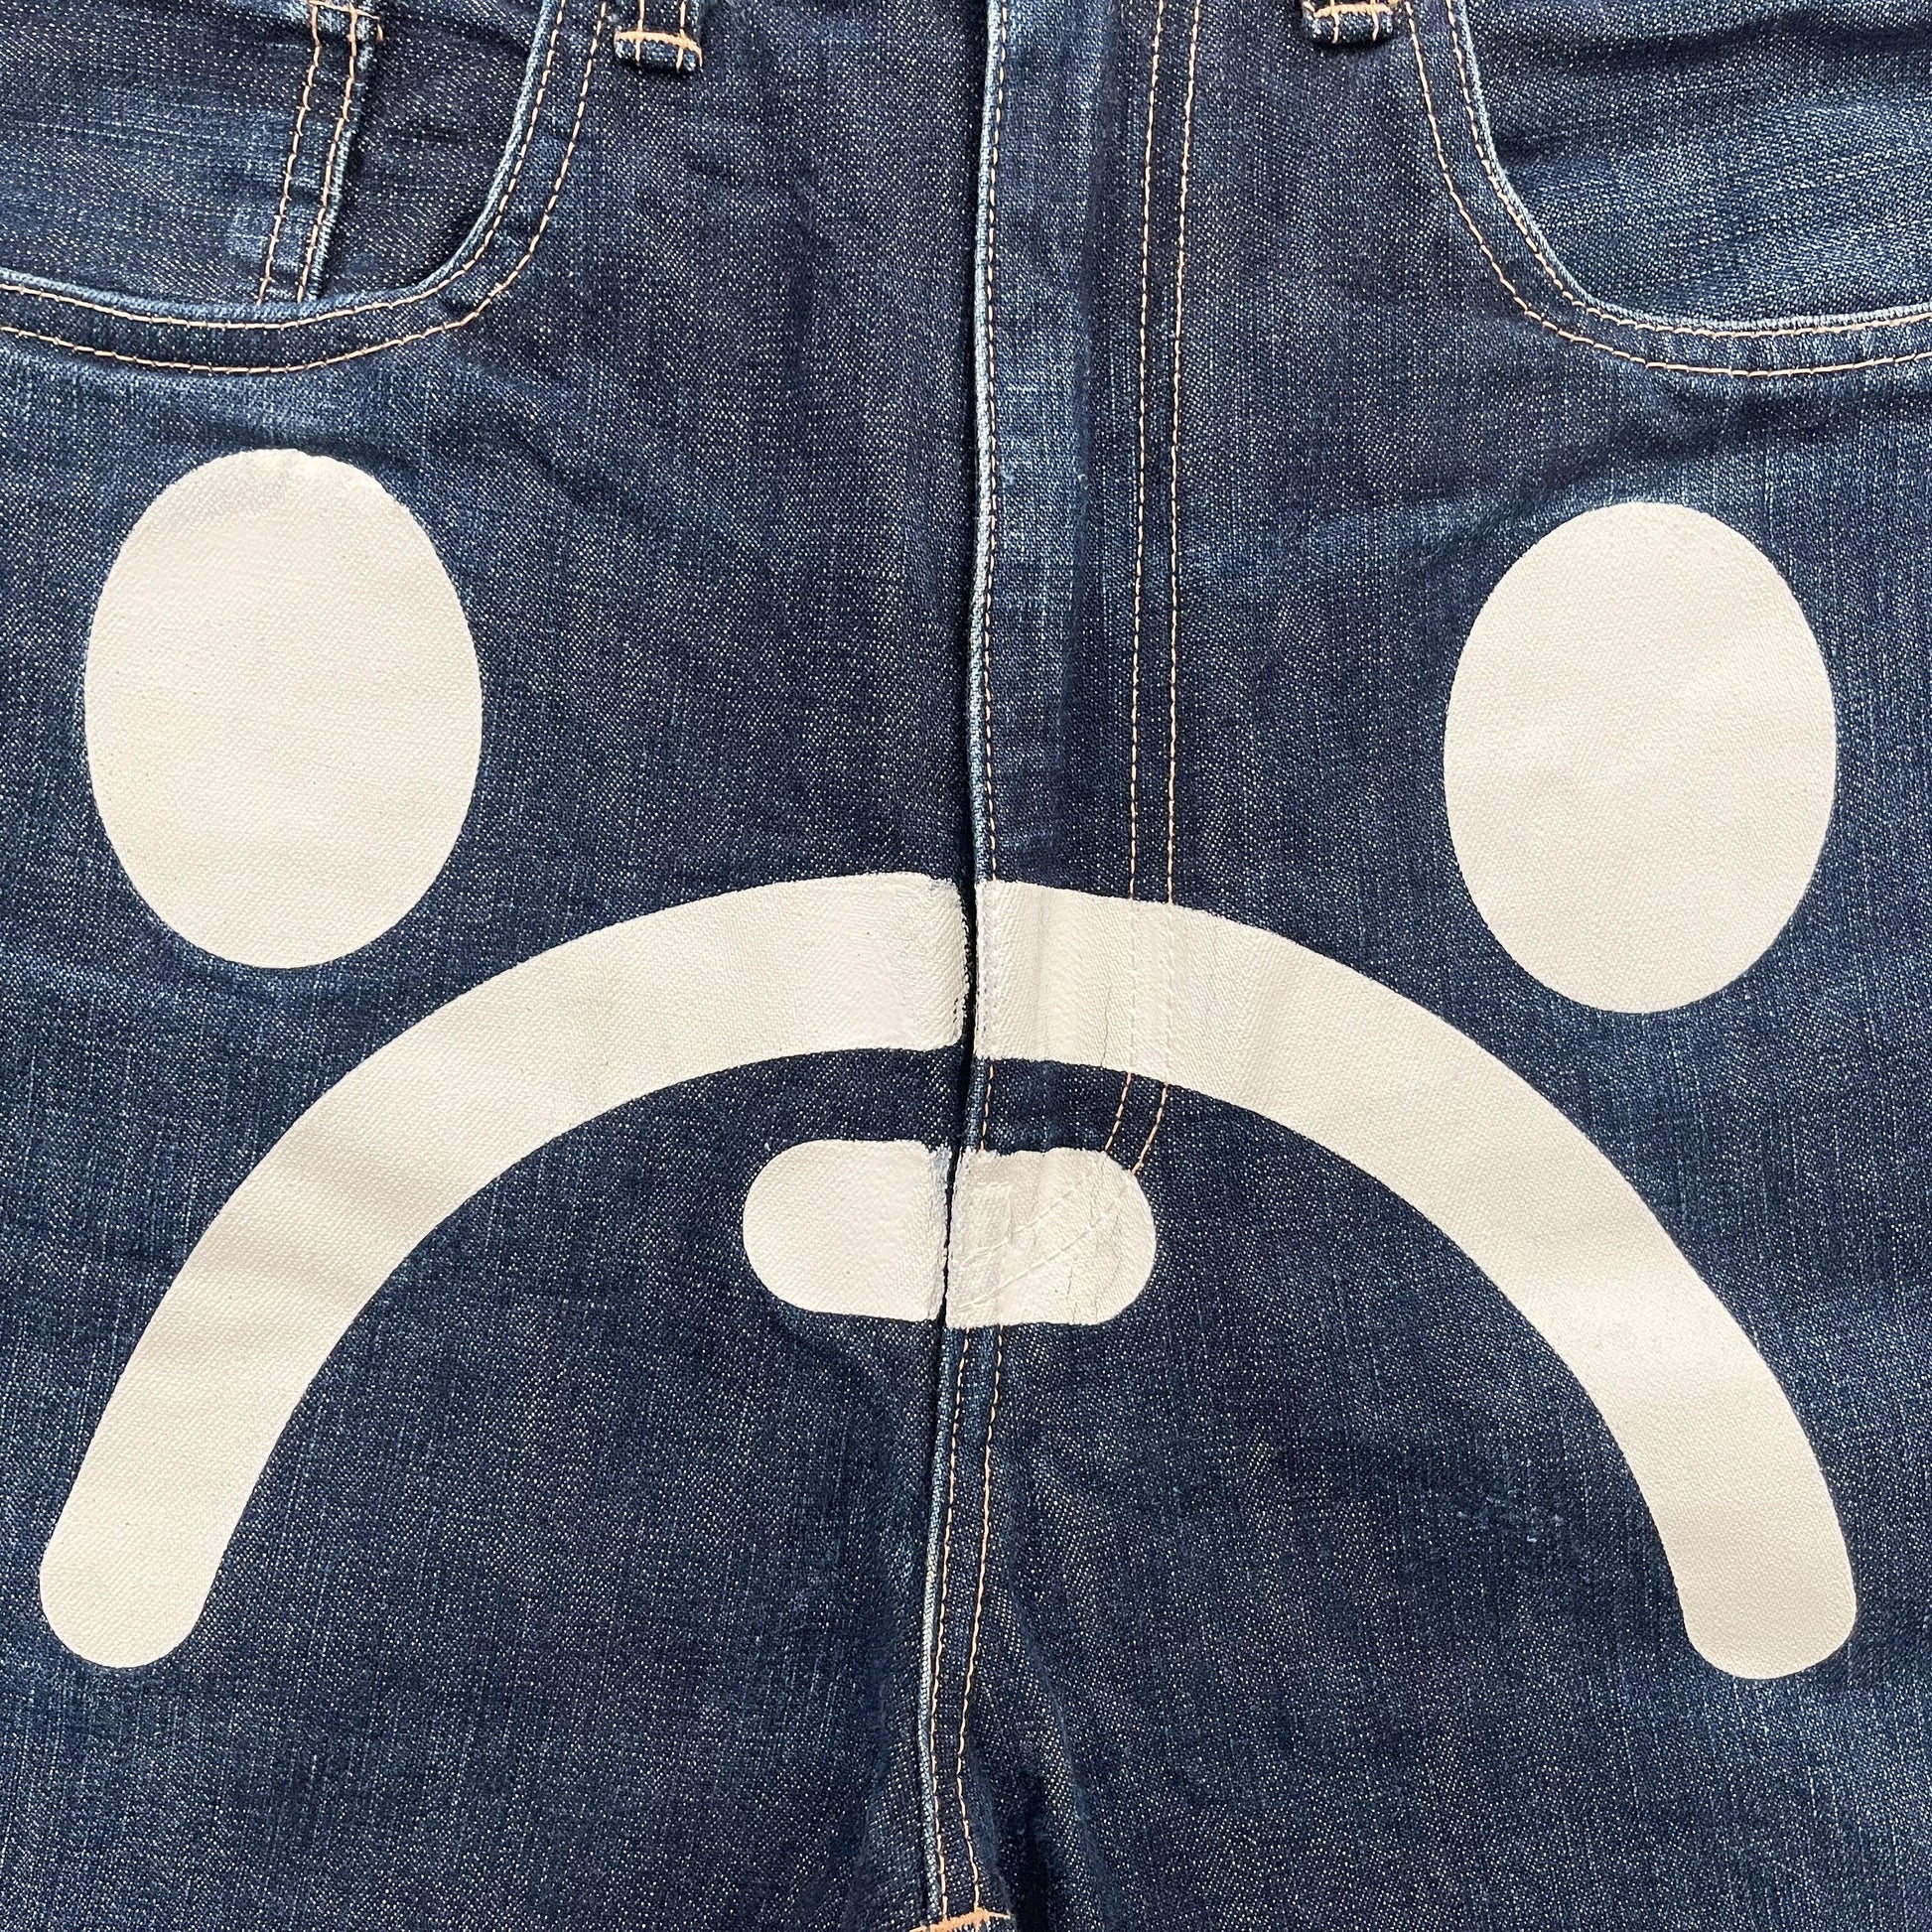 OG Bape Sad Face Jeans - Known Source